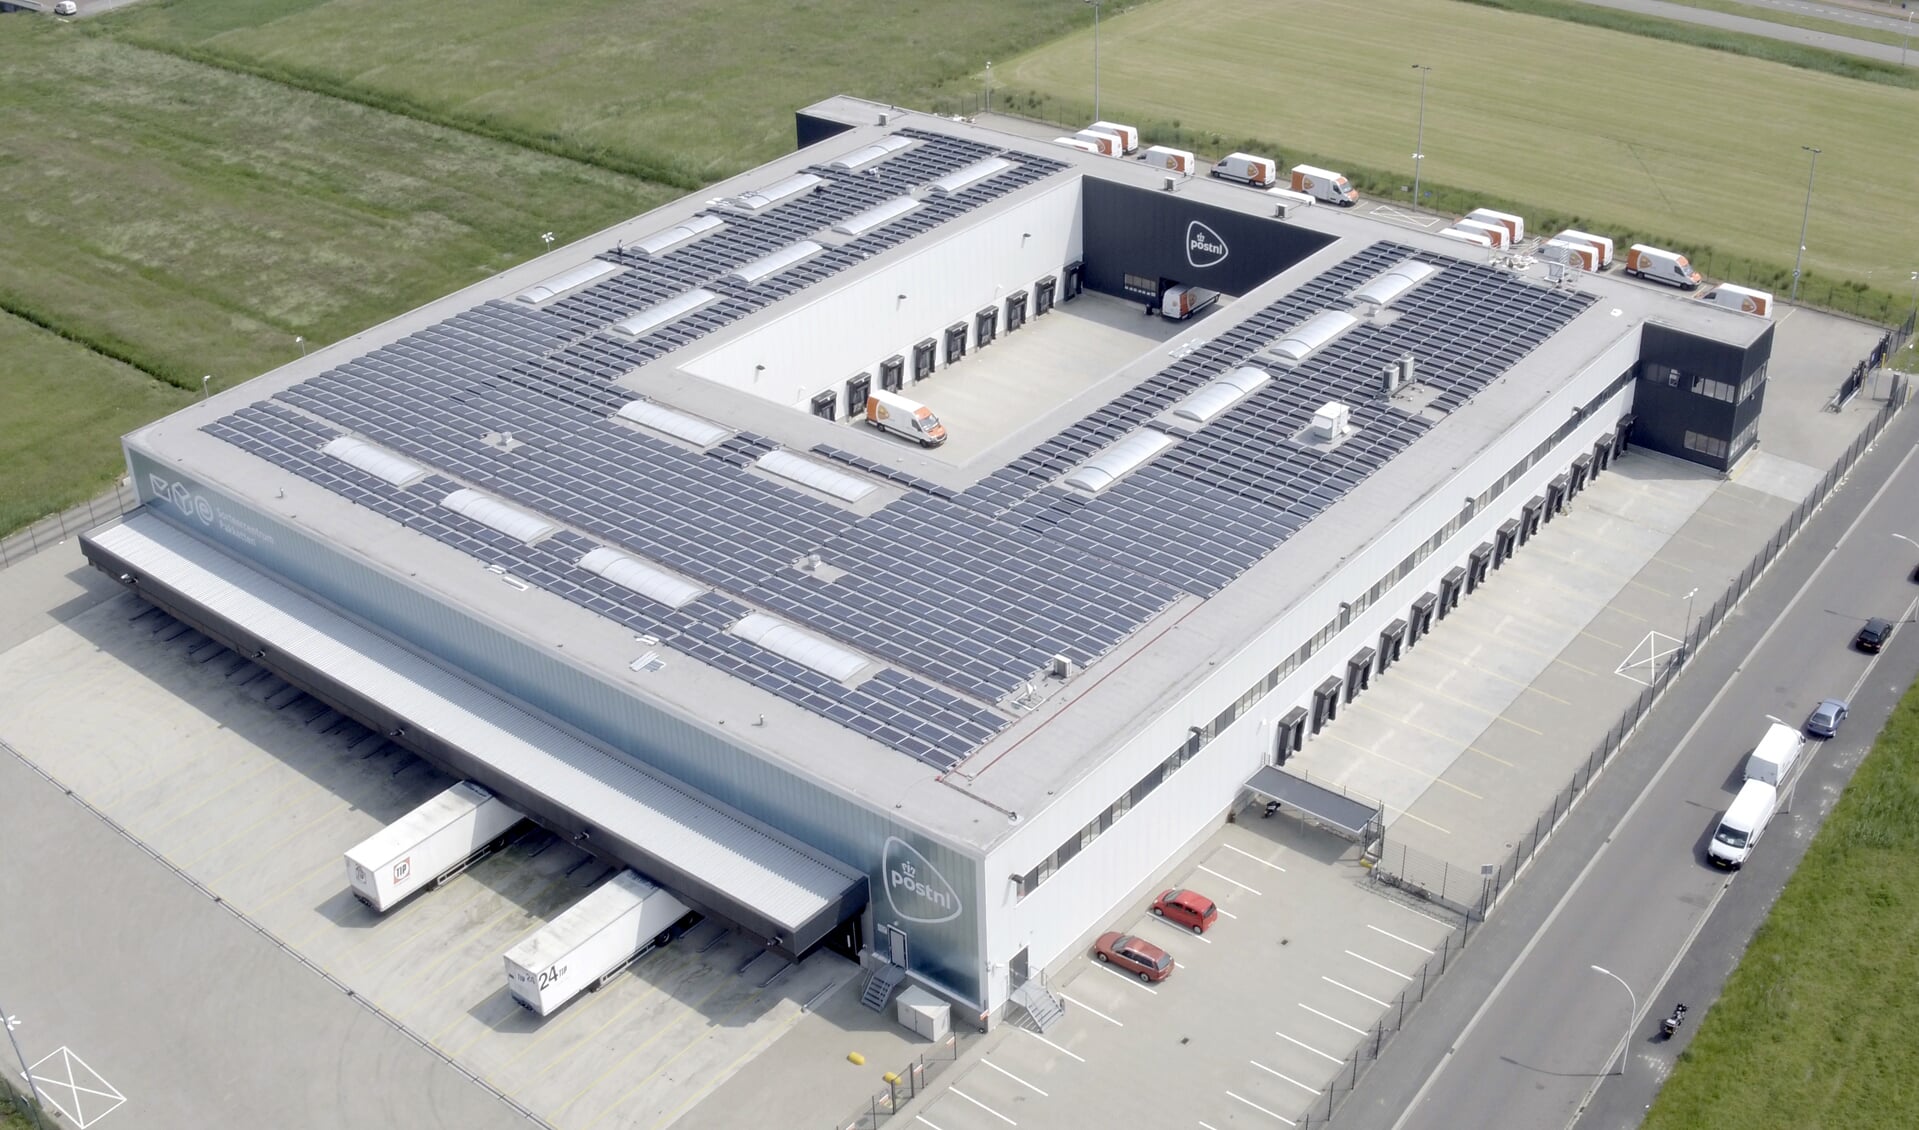 Ruim duizend zonnepanelen liggen er op het dak van het sorteercentrum aan de Oosthoutlaan. Dat is goed voor 40 procent van de energie die het bedrijf nodig heeft. | Foto: pr.